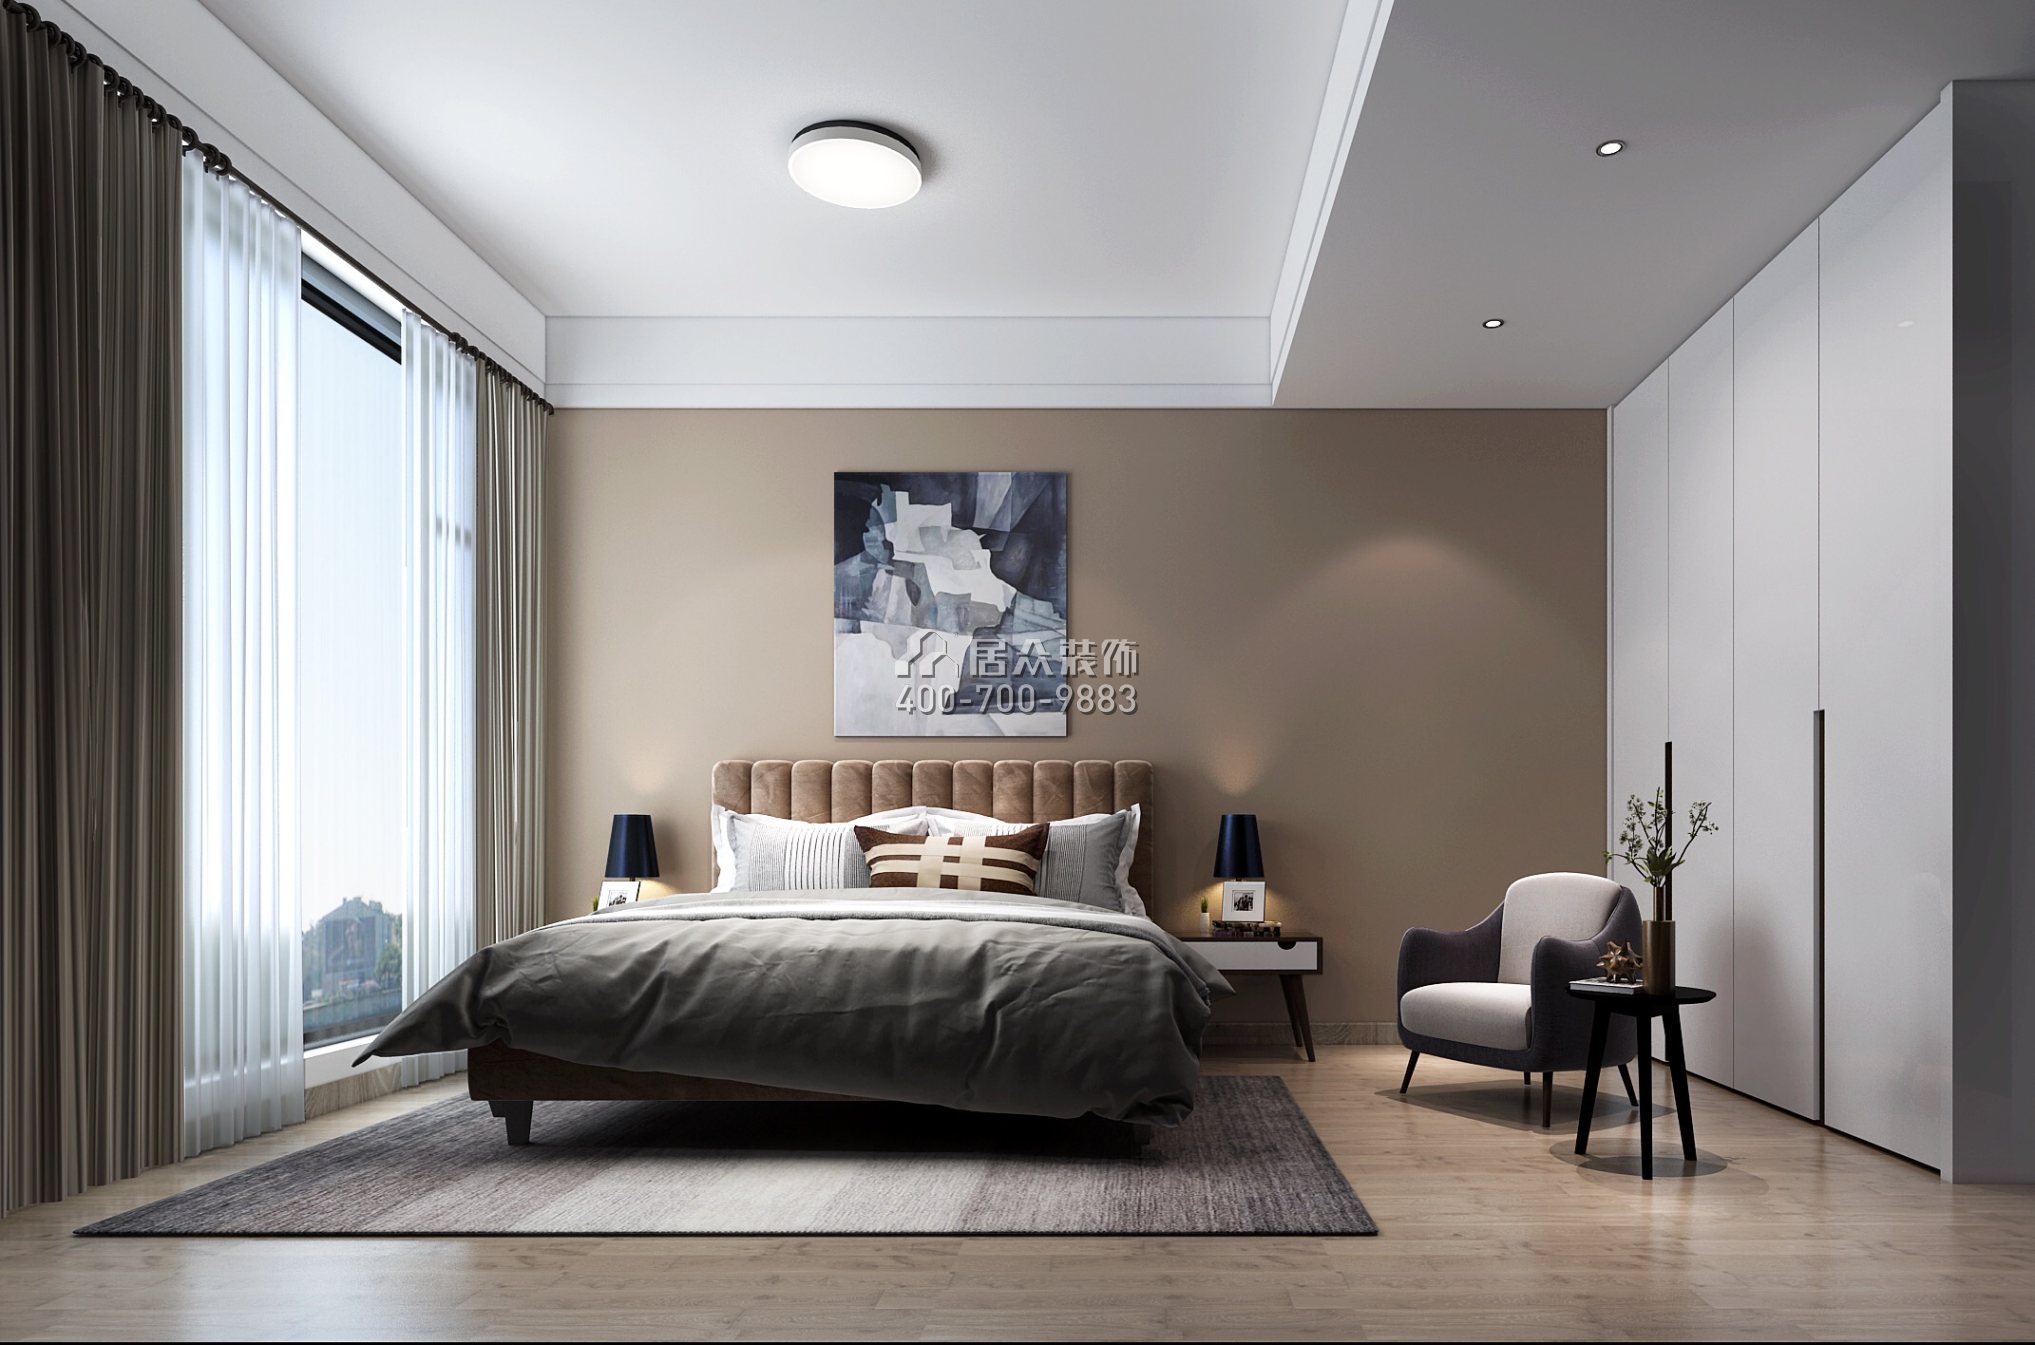 合景譽山國際168平方米北歐風格別墅戶型臥室裝修效果圖